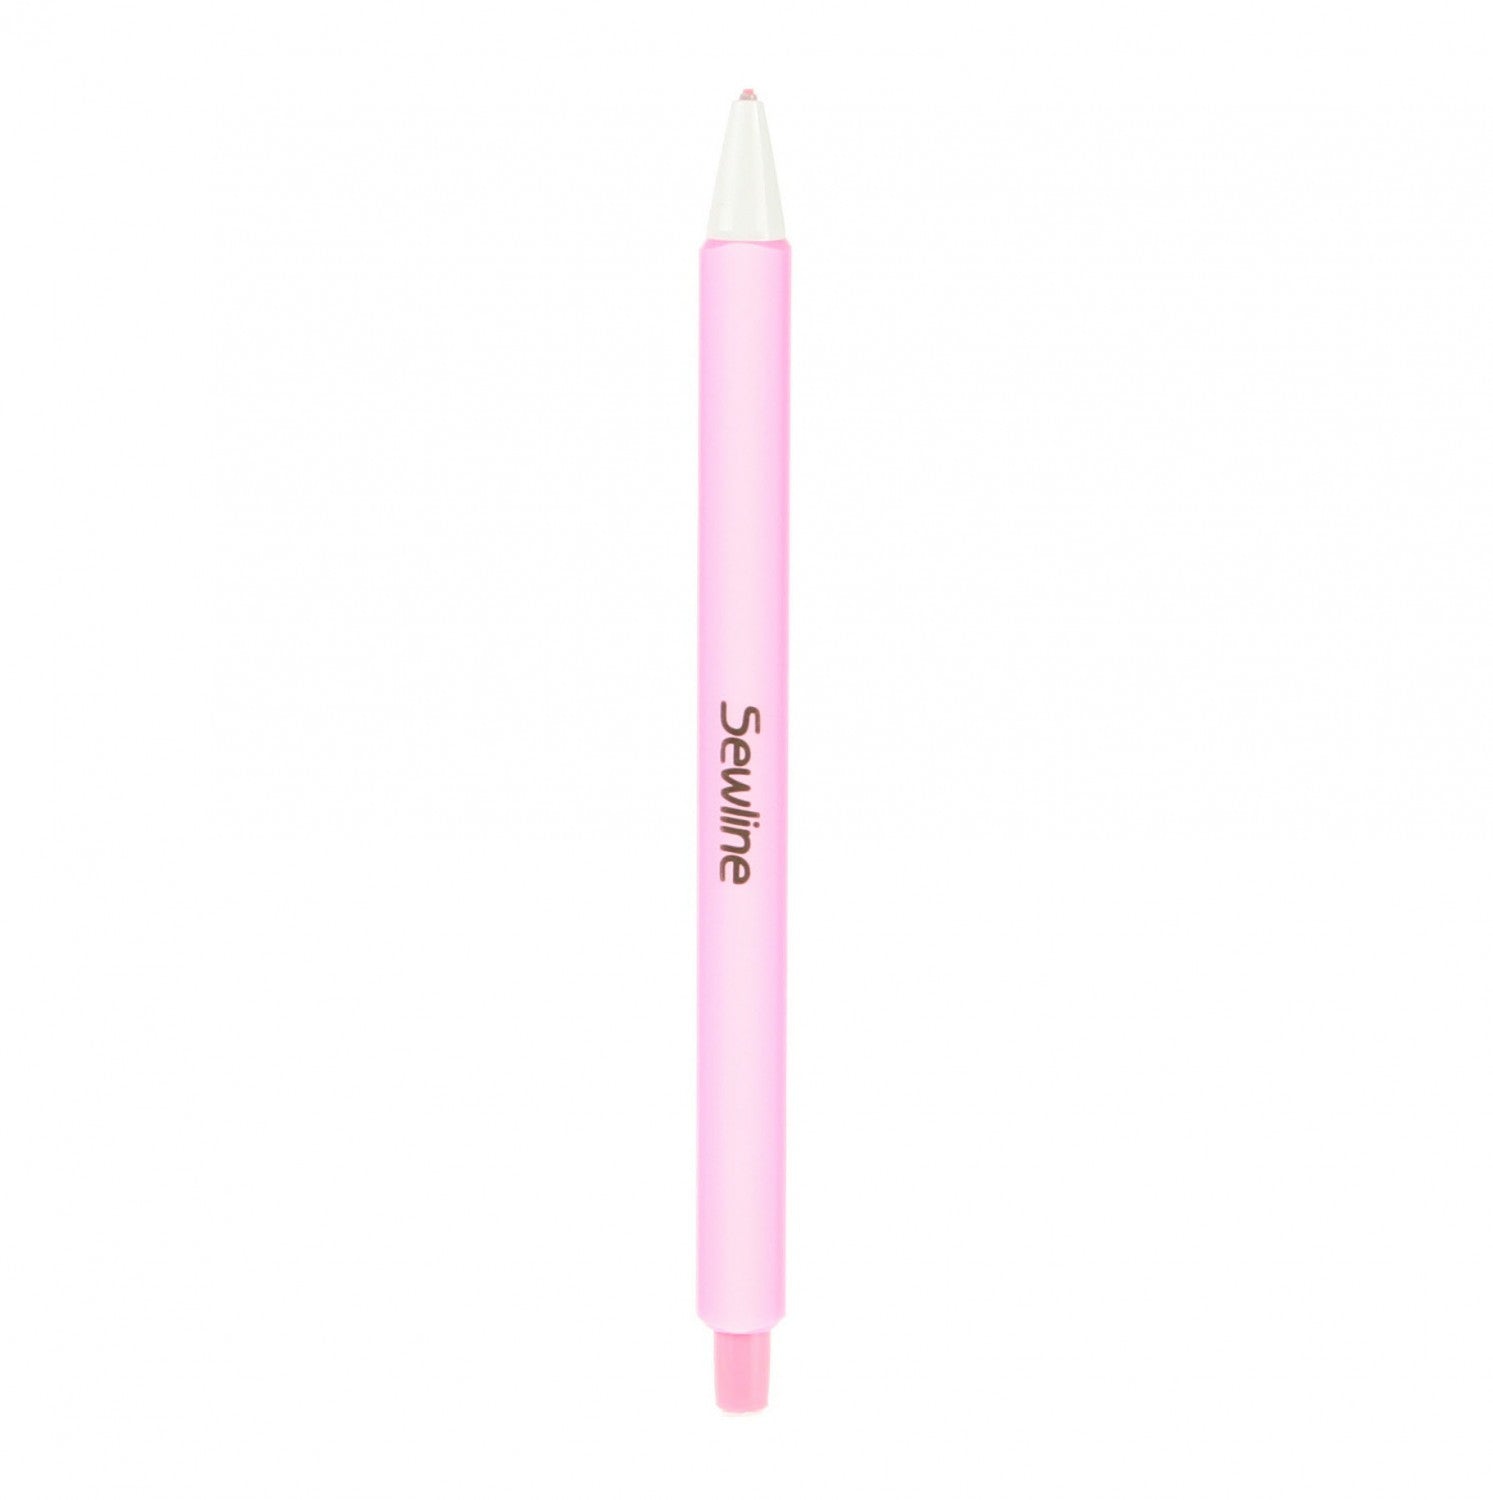 Pink - Sewline Chalk Pencil